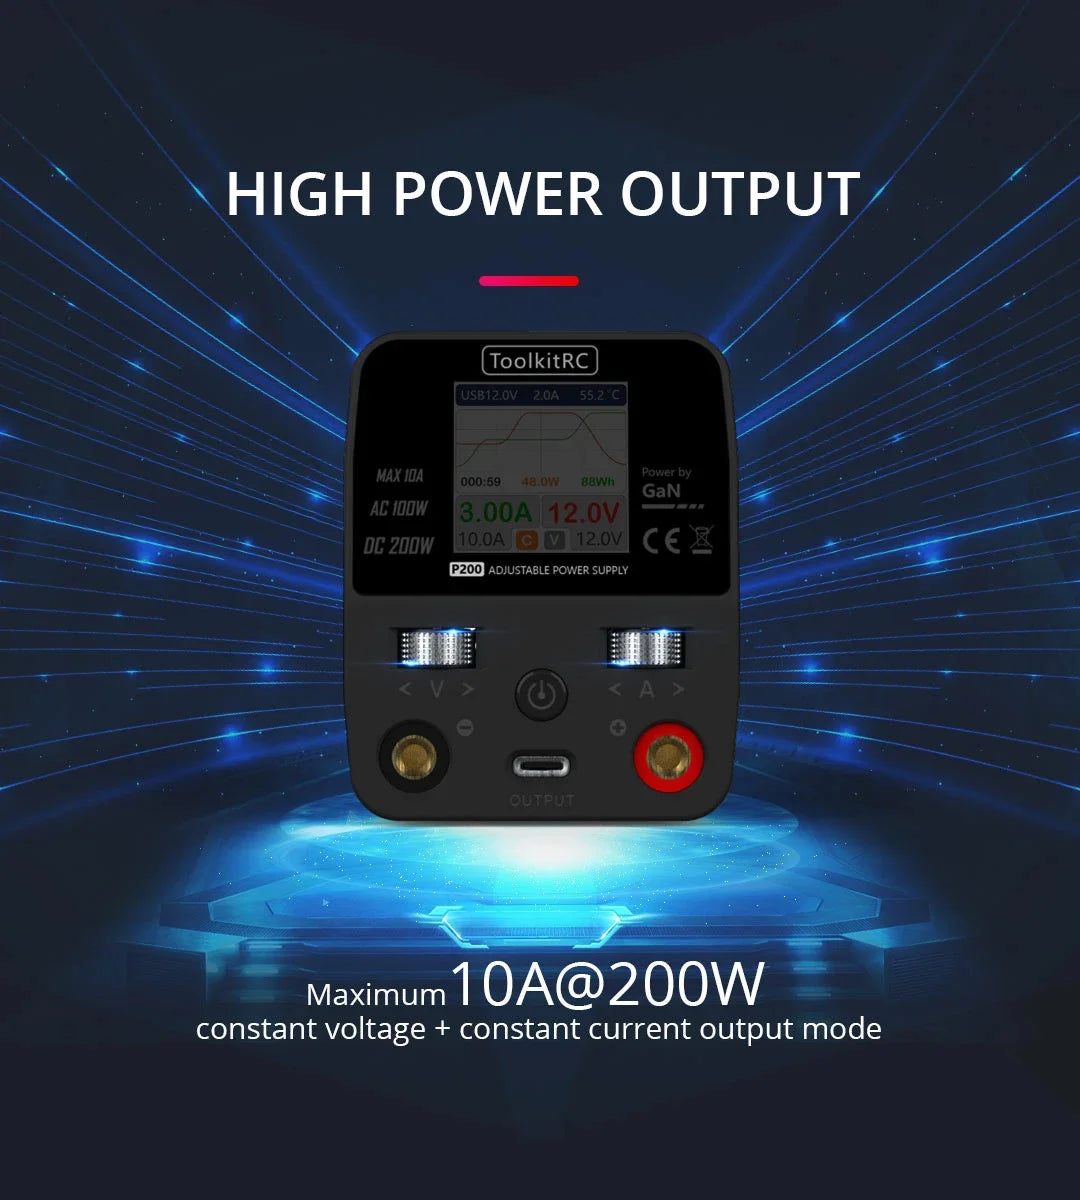 ToolkitRC P200 Power Supply, HIGH POWER OUTPUT ToolkitRC USBTZ OV 2.QA 55.2"